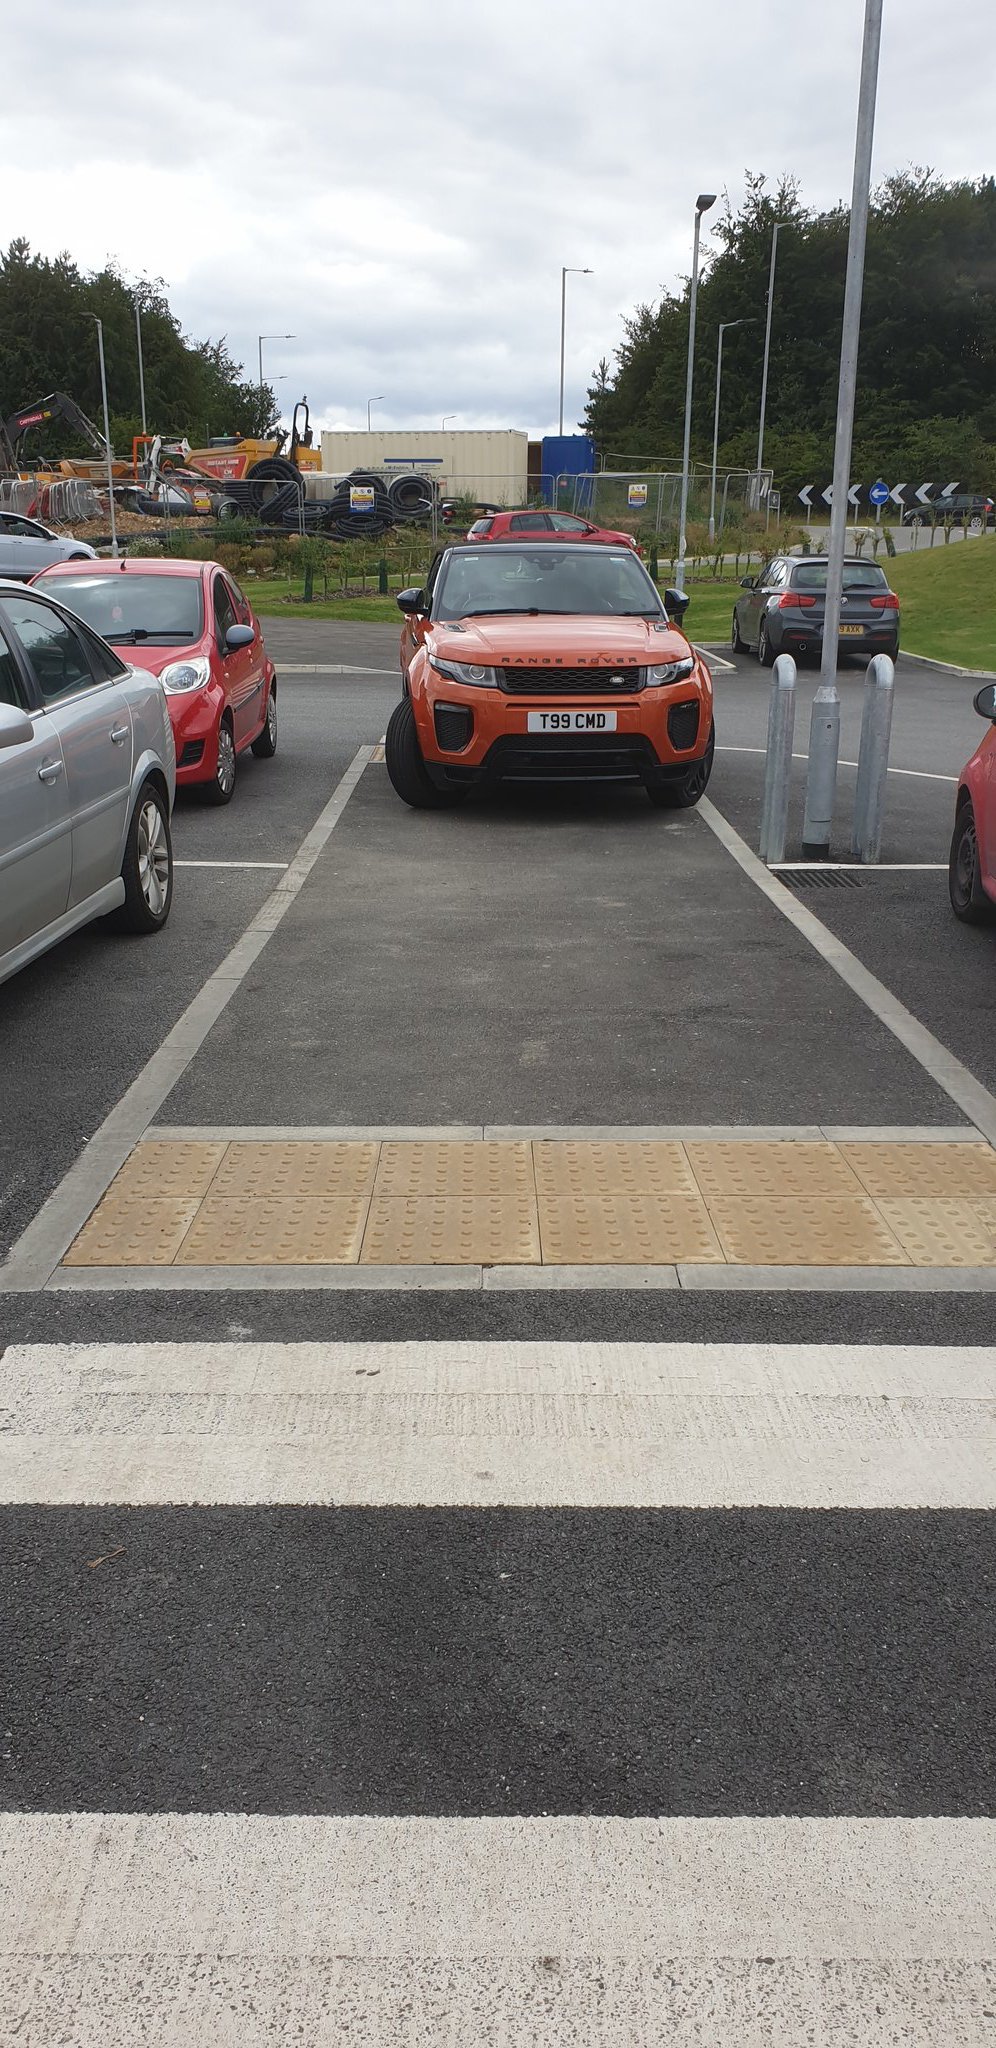 T99 CMD displaying Selfish Parking